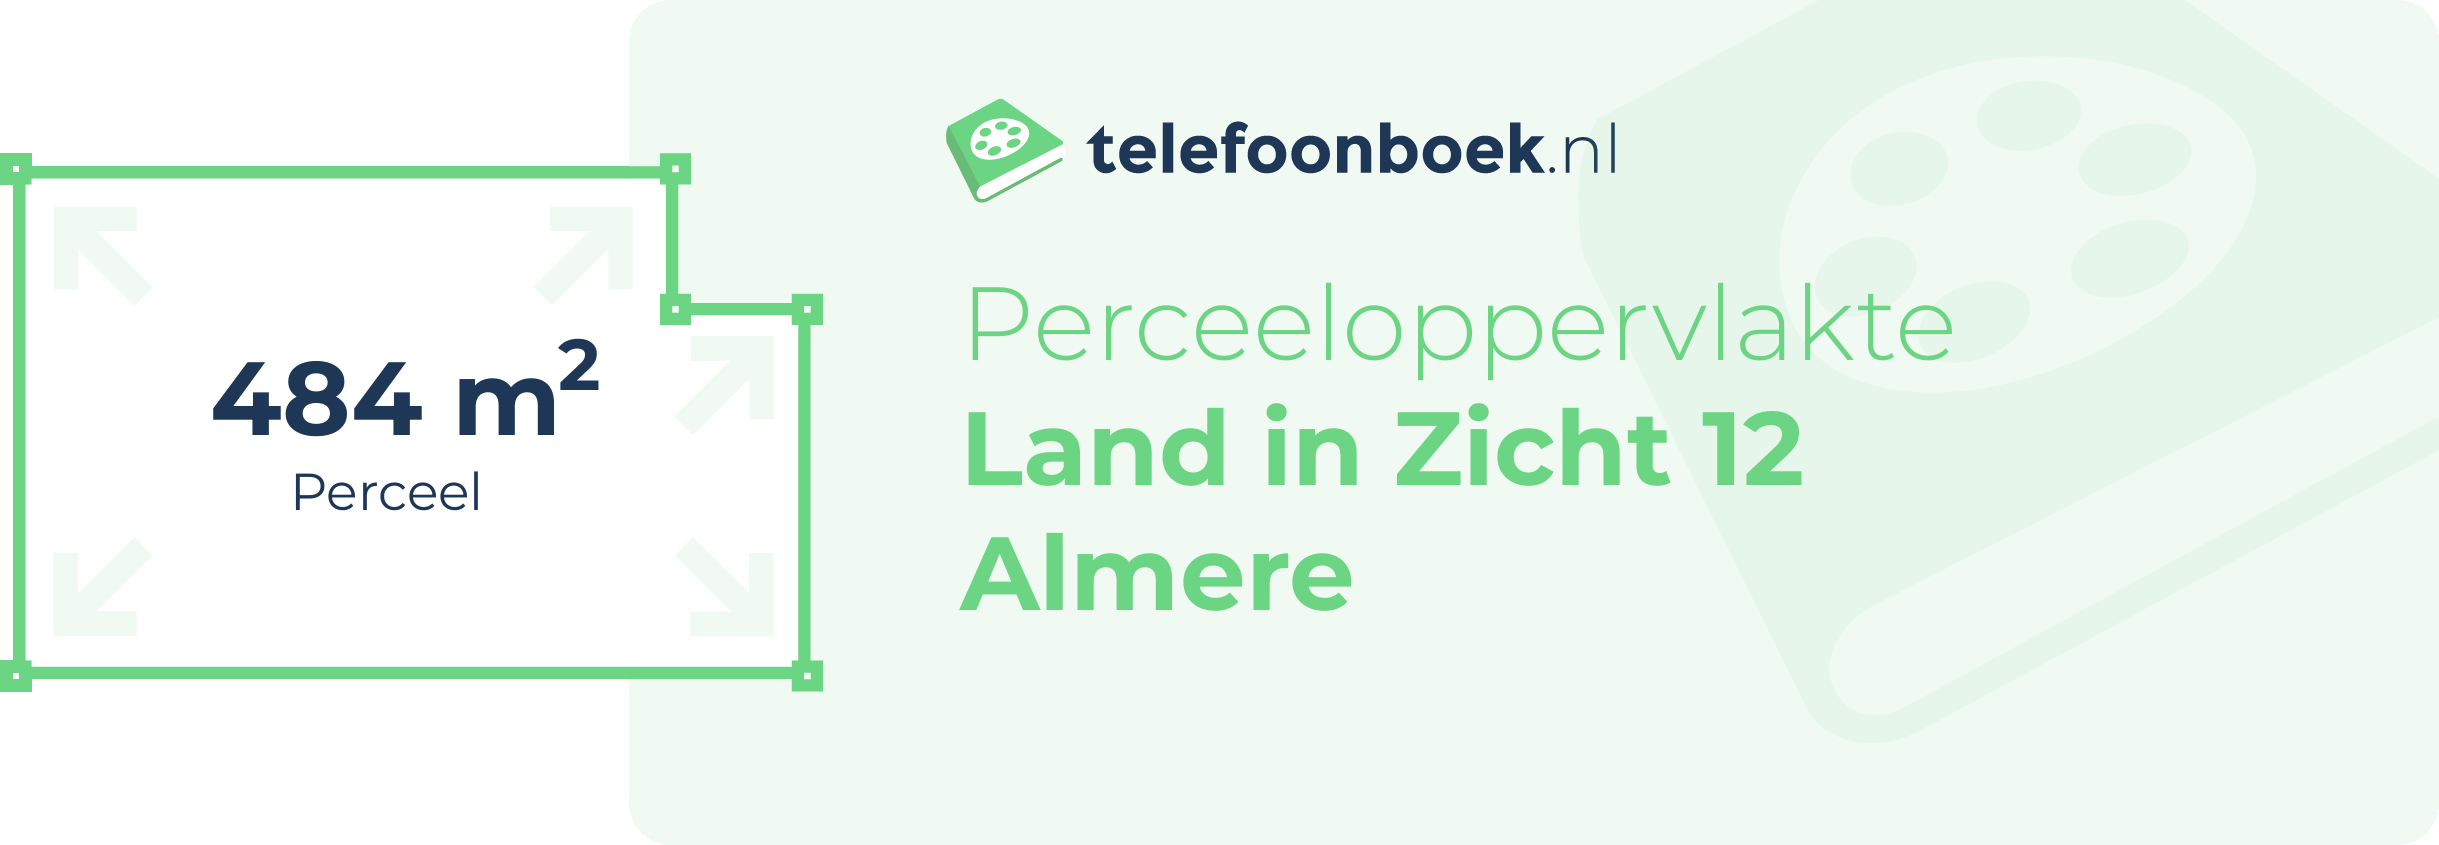 Perceeloppervlakte Land In Zicht 12 Almere